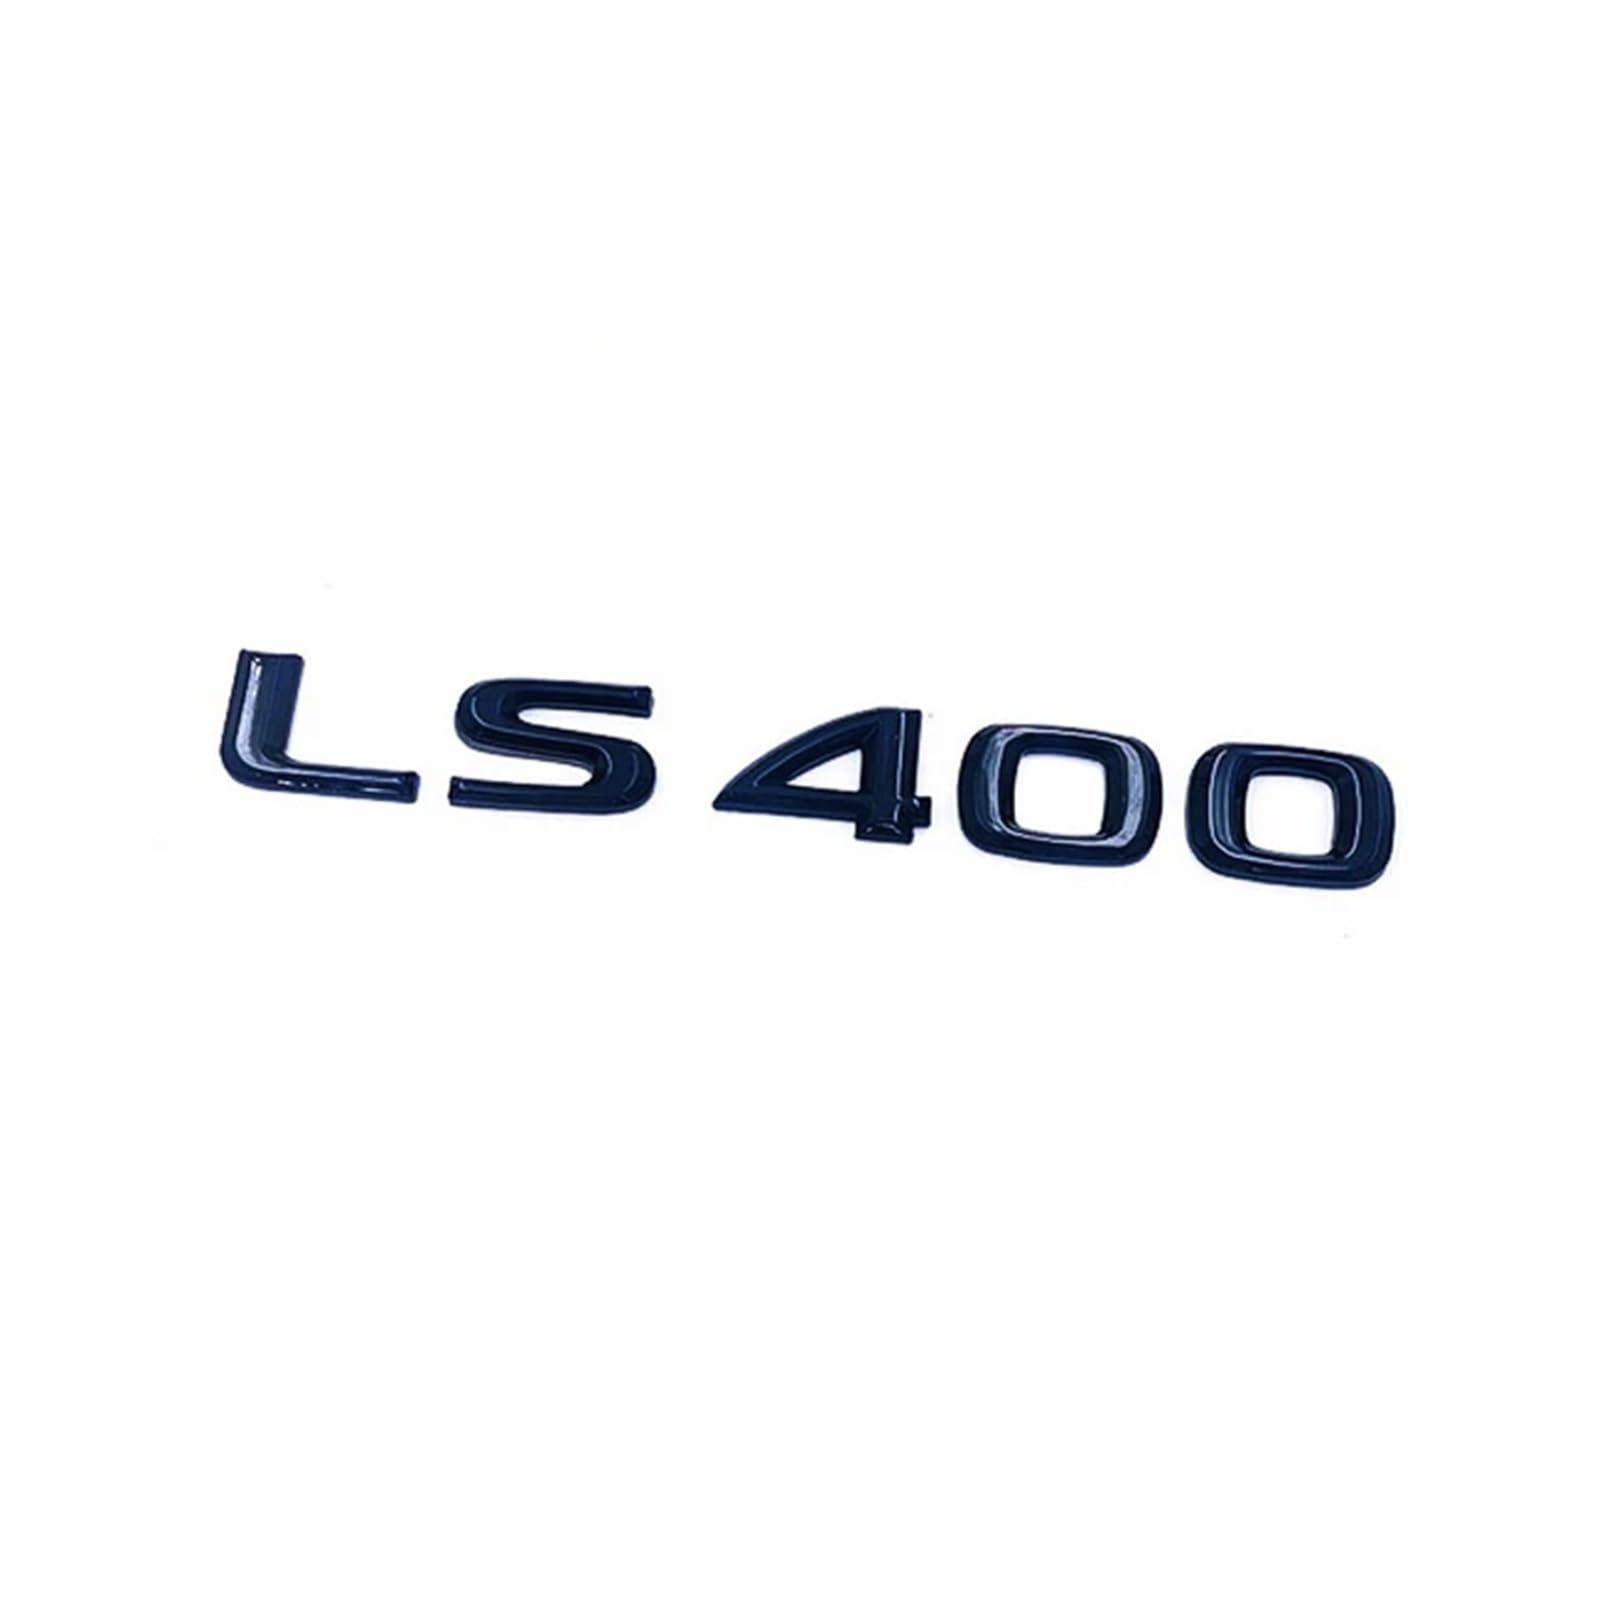 AQXYWQOL Kofferraum ABS Chrom Buchstaben Logos Abzeichen Emblem Aufkleber Styling Aufkleber kompatibel mit LS LS350 LS400 LS460 LS460L Zubehör Farbe ist konstant, verblasst nicht und beschädigt(C) von AQXYWQOL